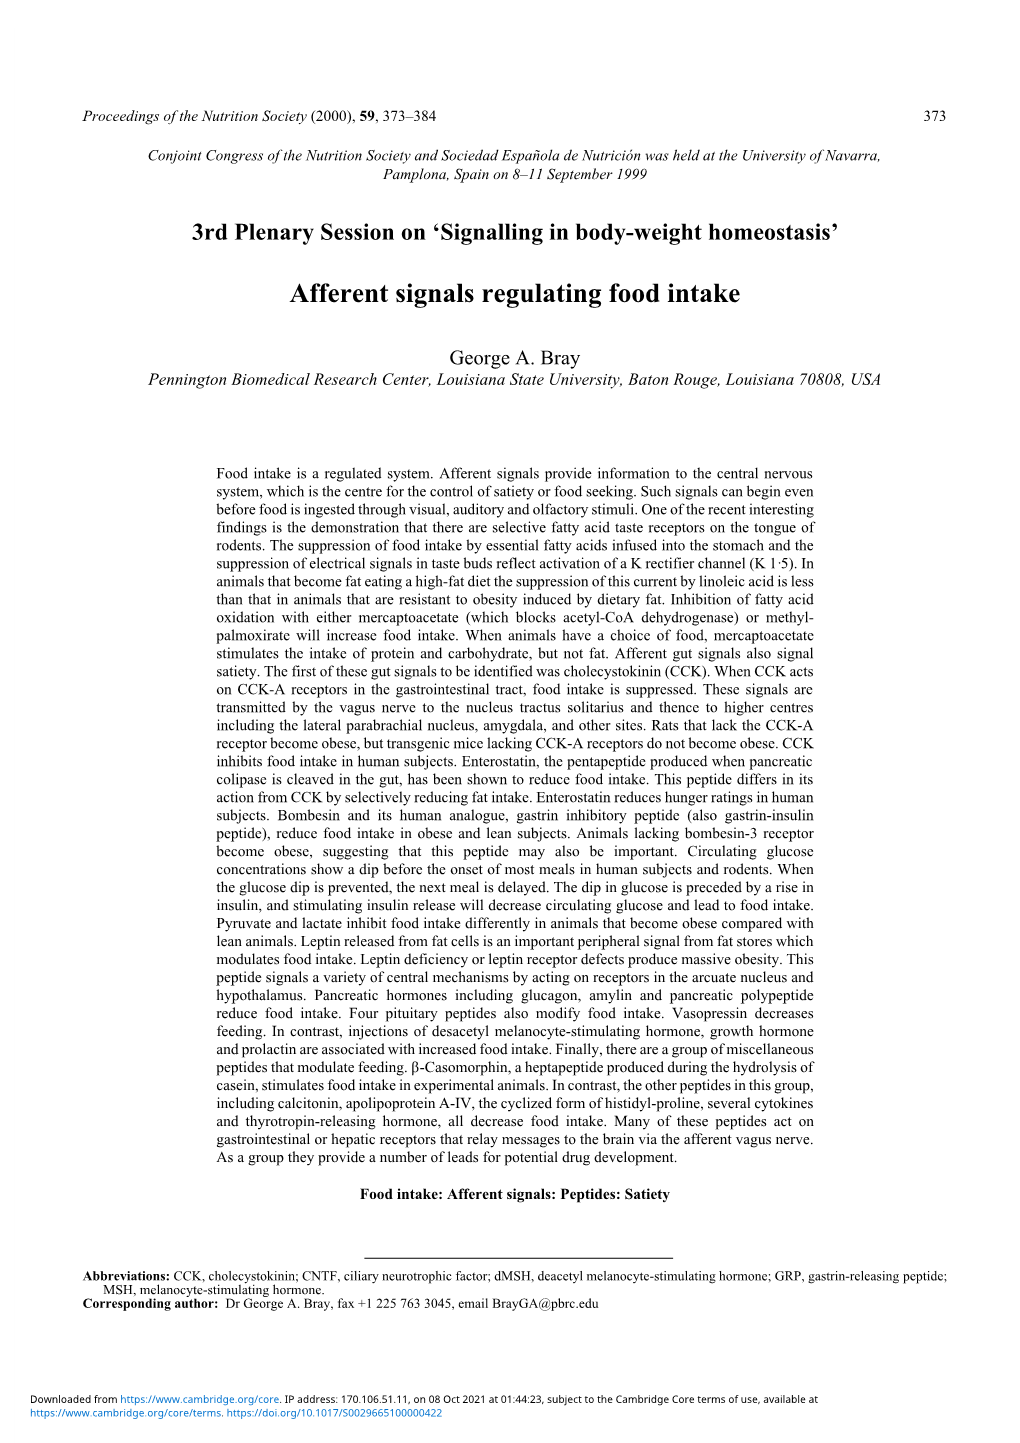 Afferent Signals Regulating Food Intake